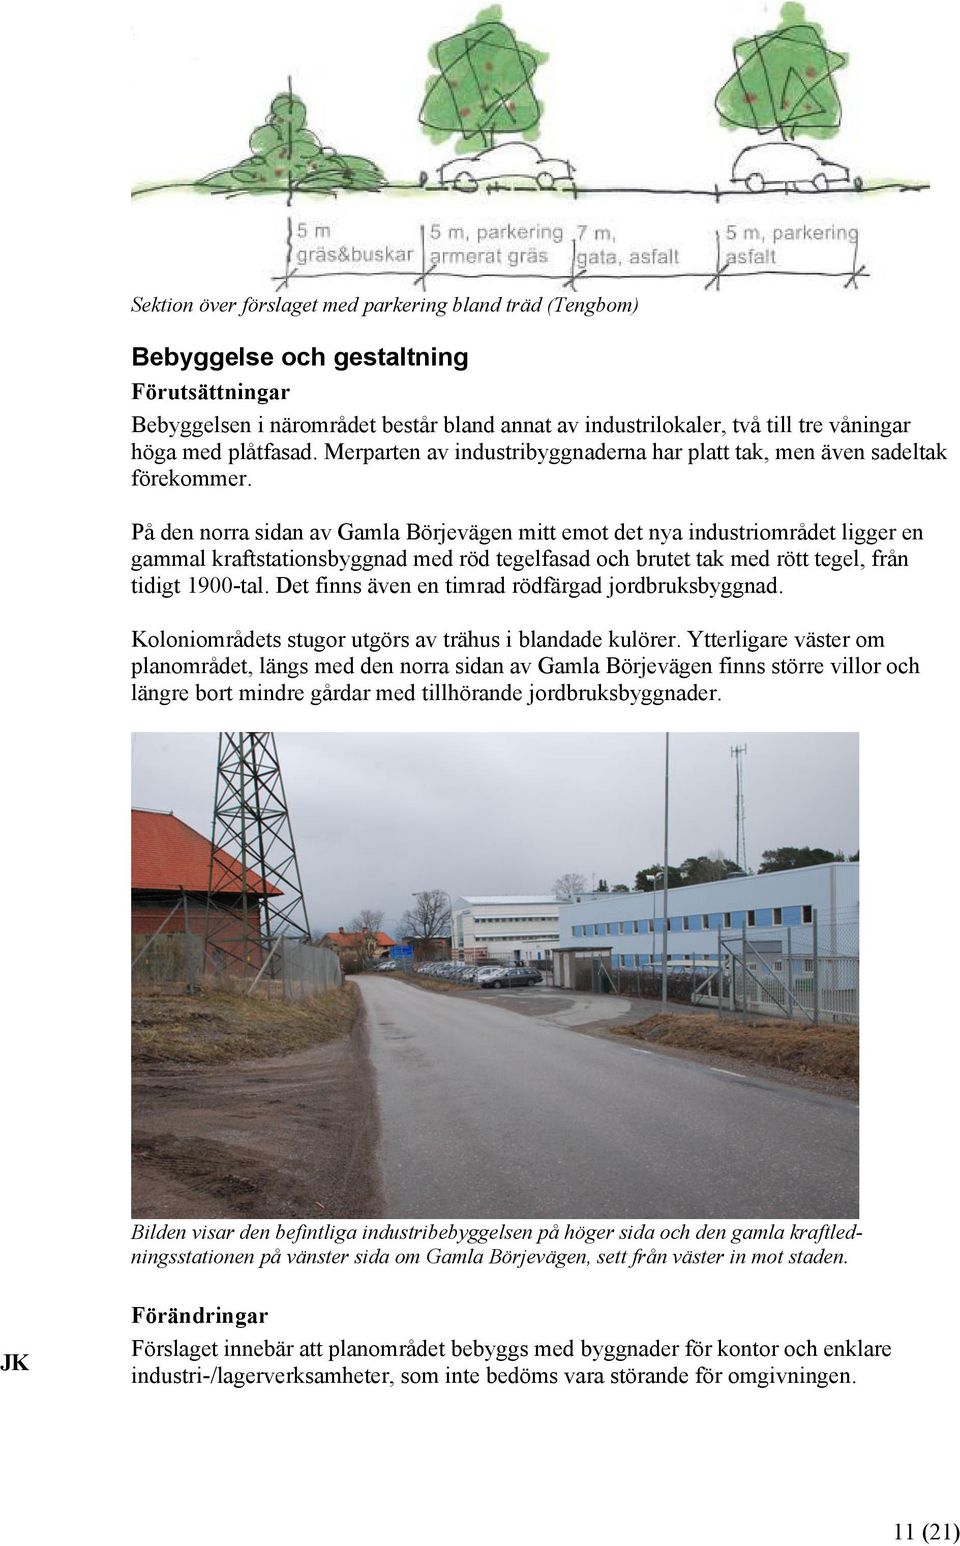 På den norra sidan av Gamla Börjevägen mitt emot det nya industriområdet ligger en gammal kraftstationsbyggnad med röd tegelfasad och brutet tak med rött tegel, från tidigt 1900-tal.